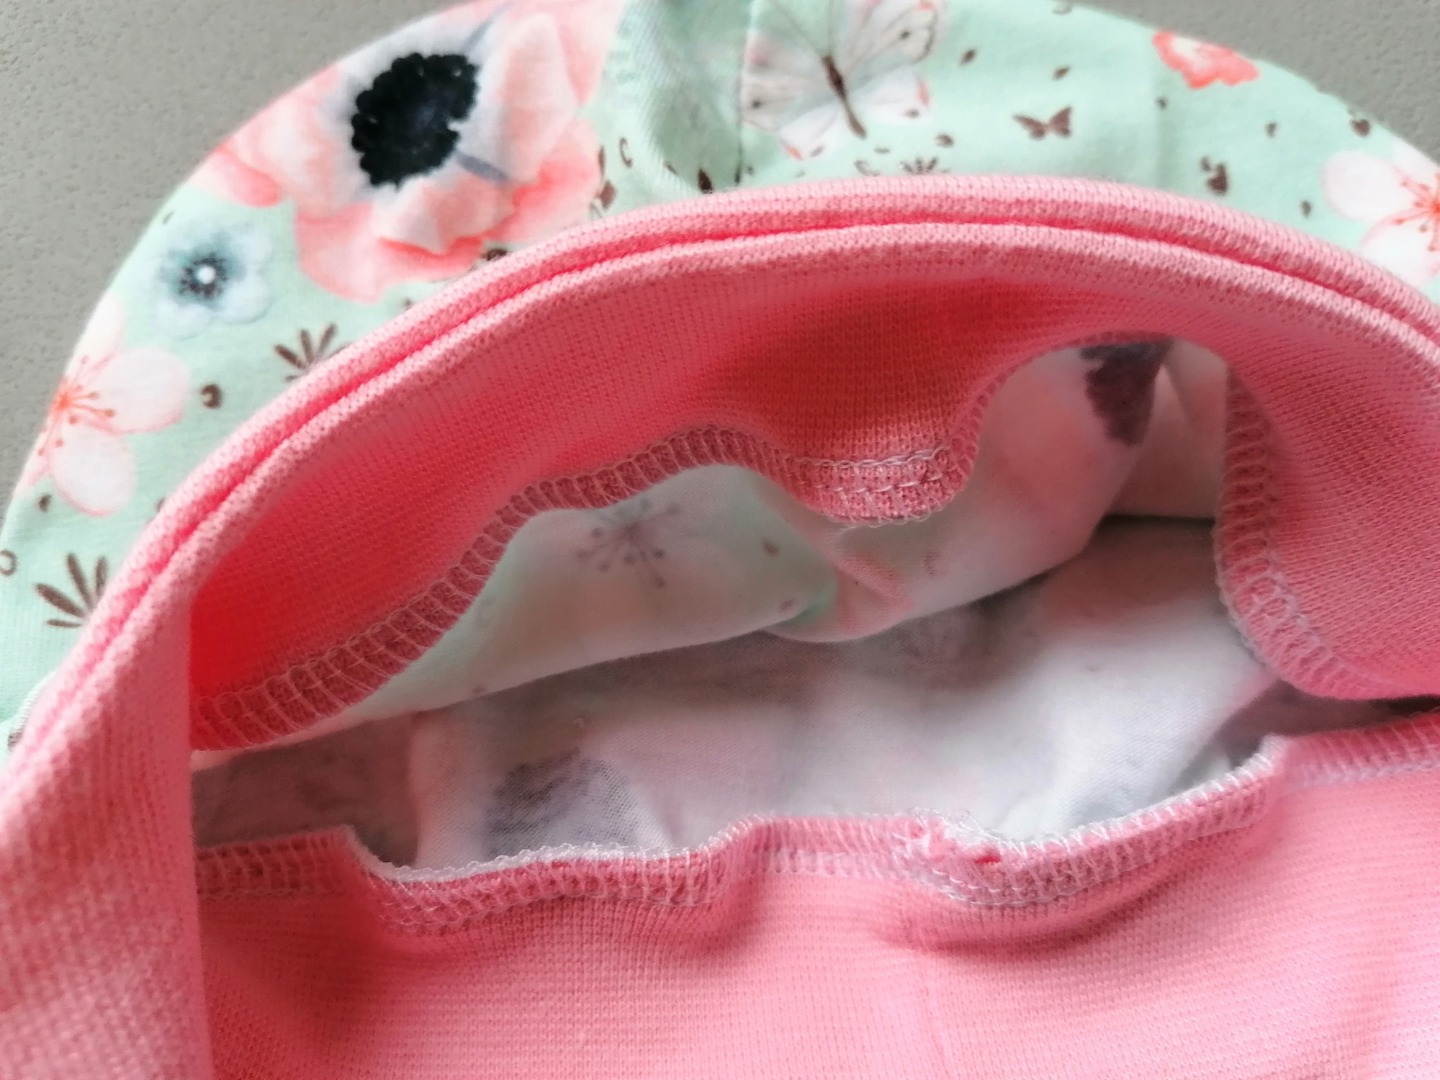 Baby Kind Mütze kopfnah geschnitten mit und ohne Bindebänder Rotkehlchen mint rosa Kopfumfang 37 - 54cm Bindemütze mit Bündchen 3